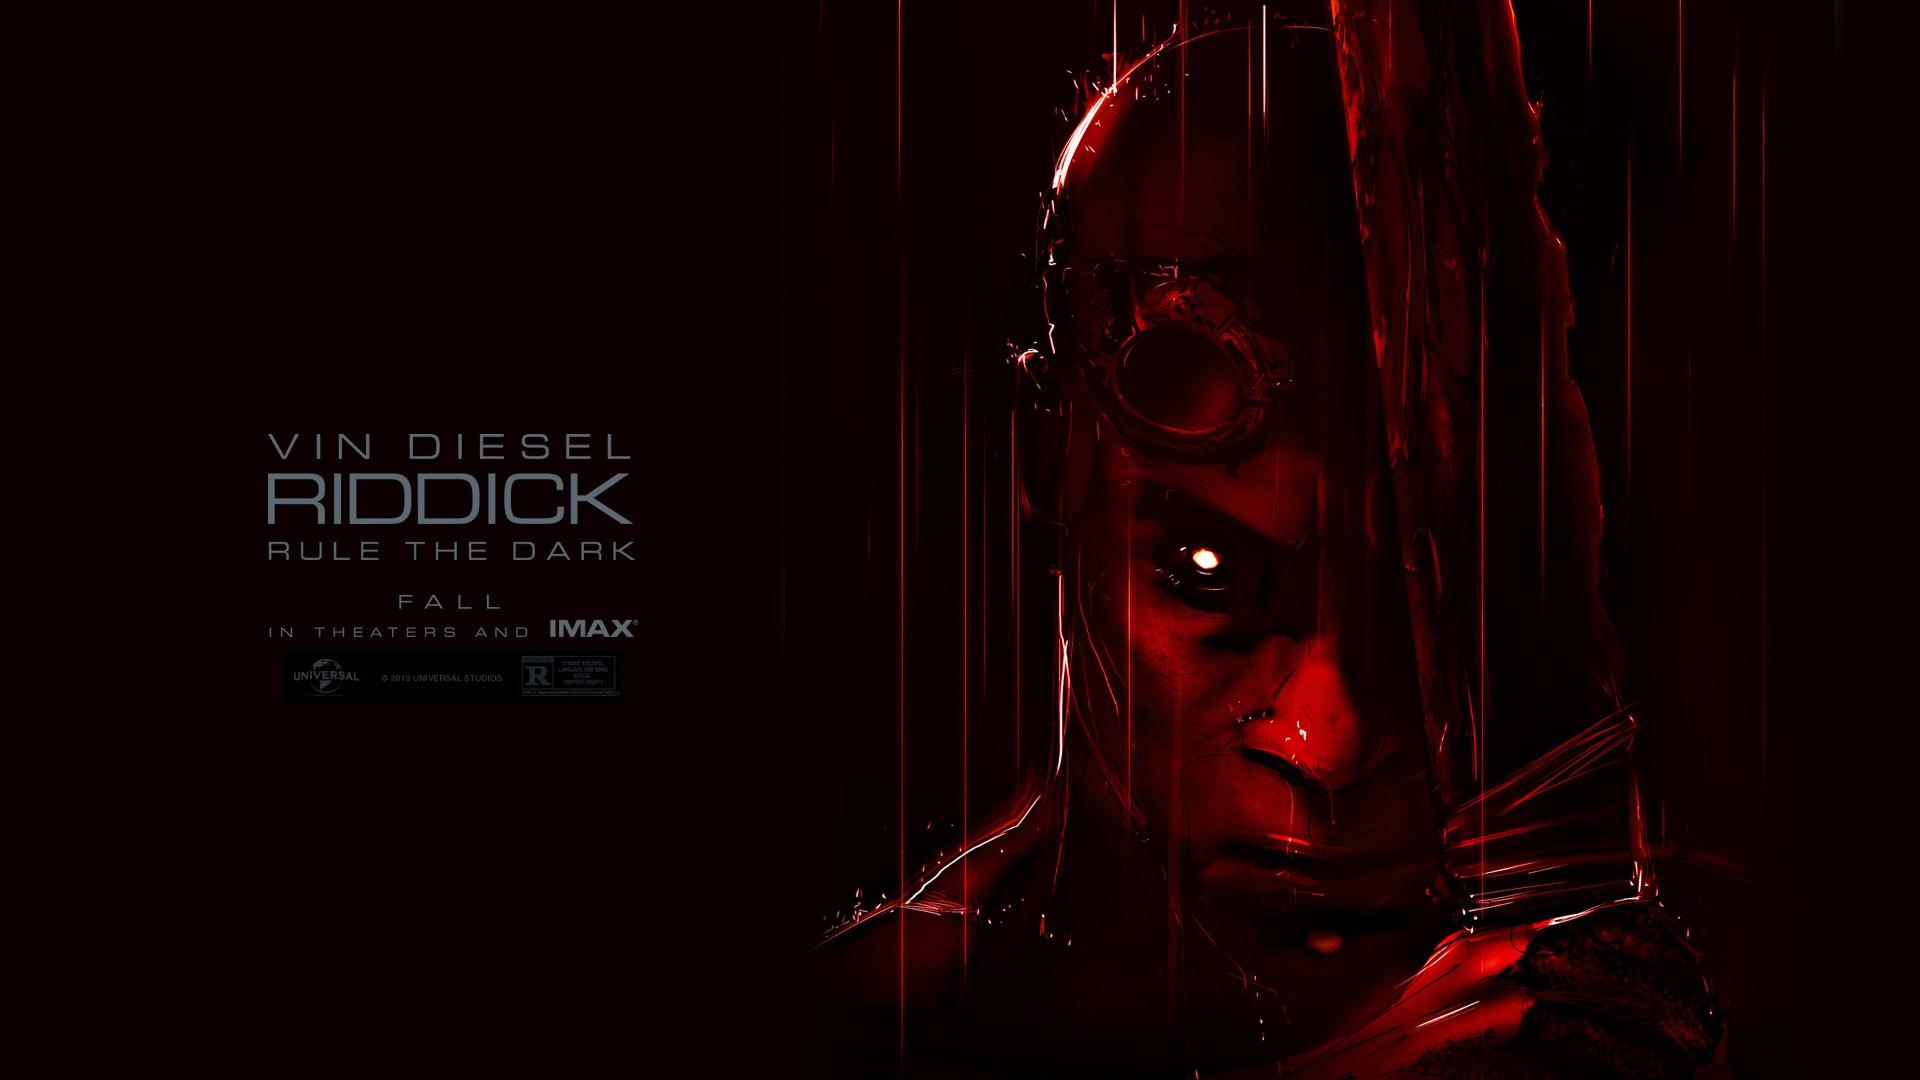 Vin Diesel's Riddick 2013 Wallpaper